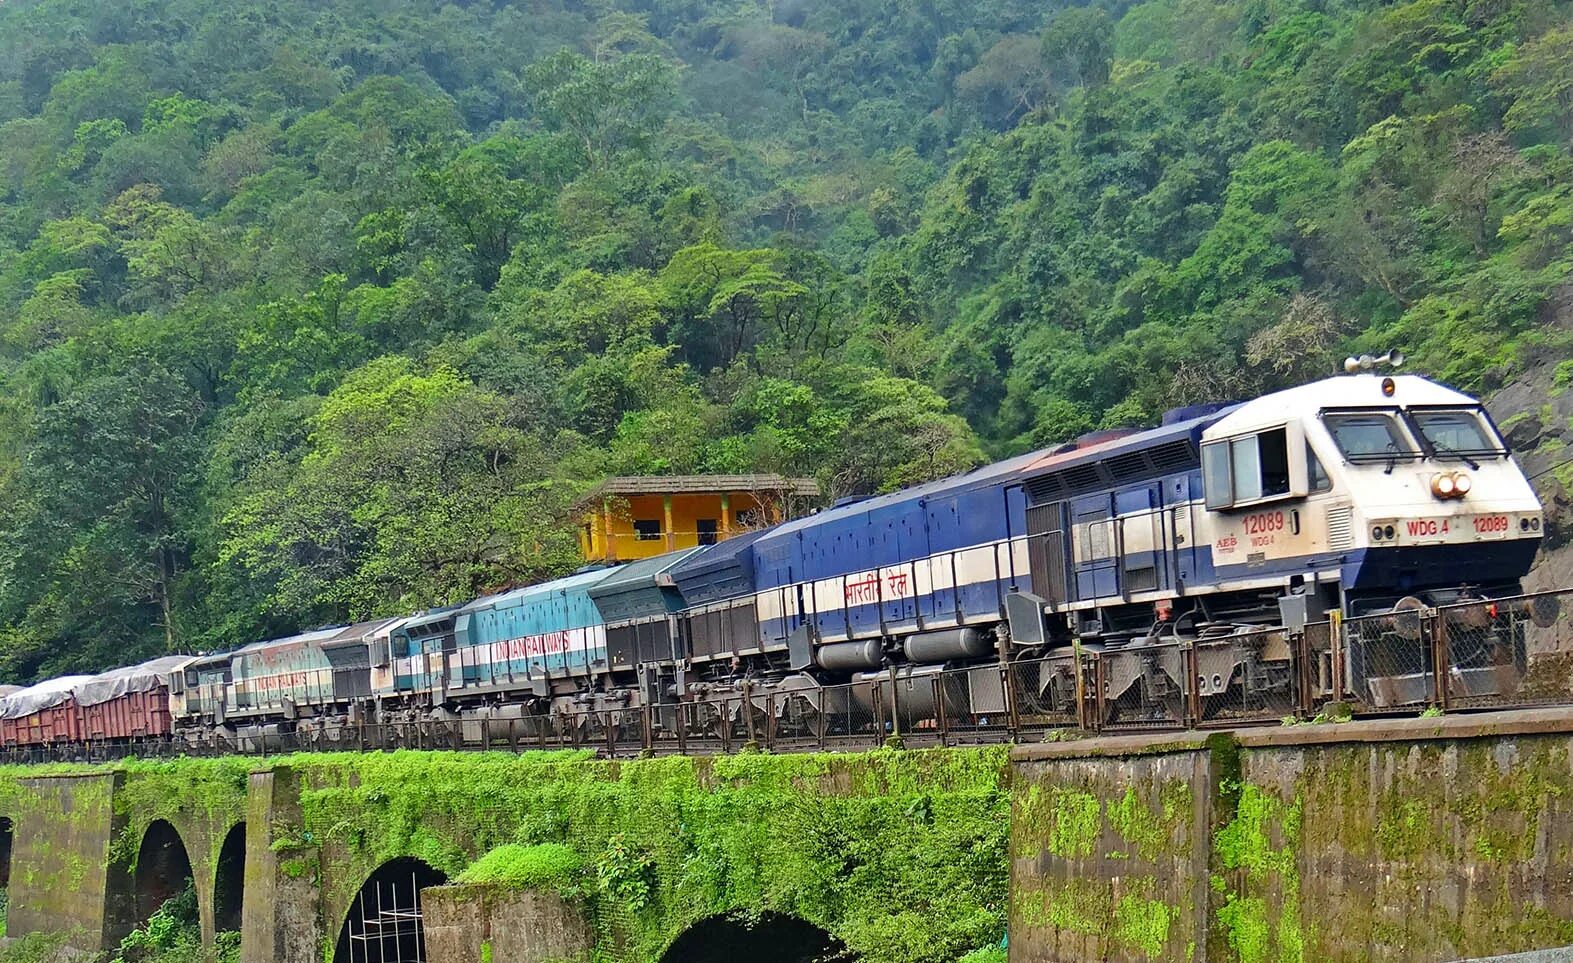 Railway build. Железная дорога. Индийская железная дорога. ЖД Индии. Доминикана железная дорога.